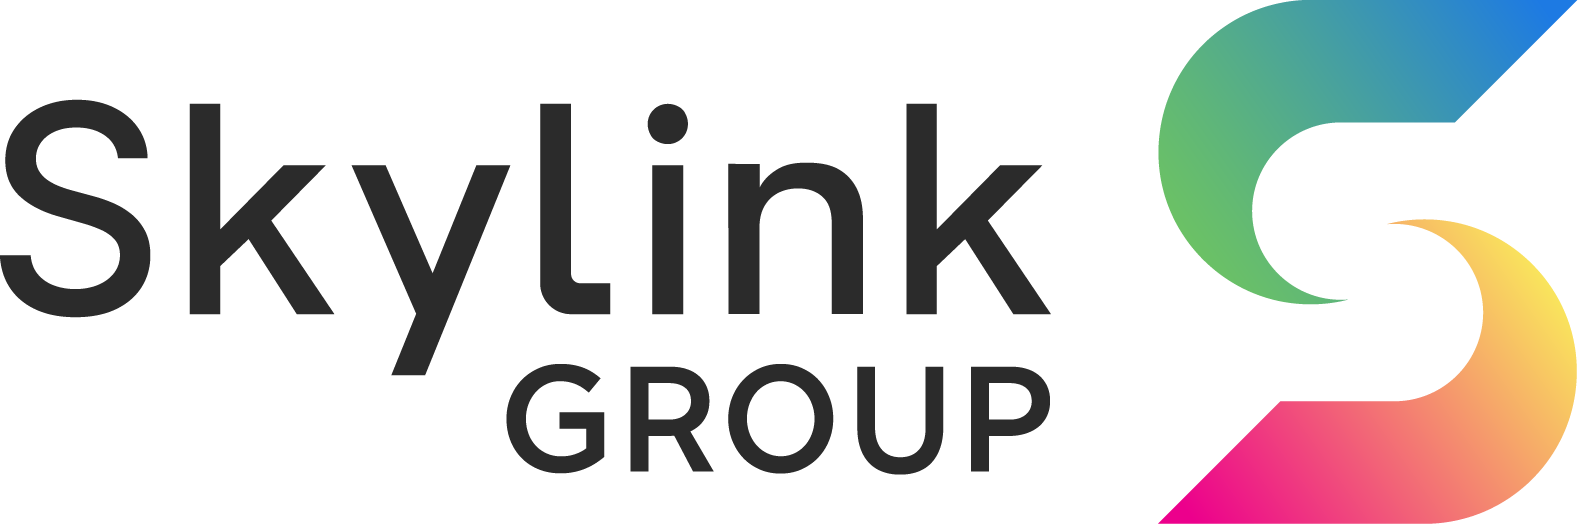 SKYLINK Group